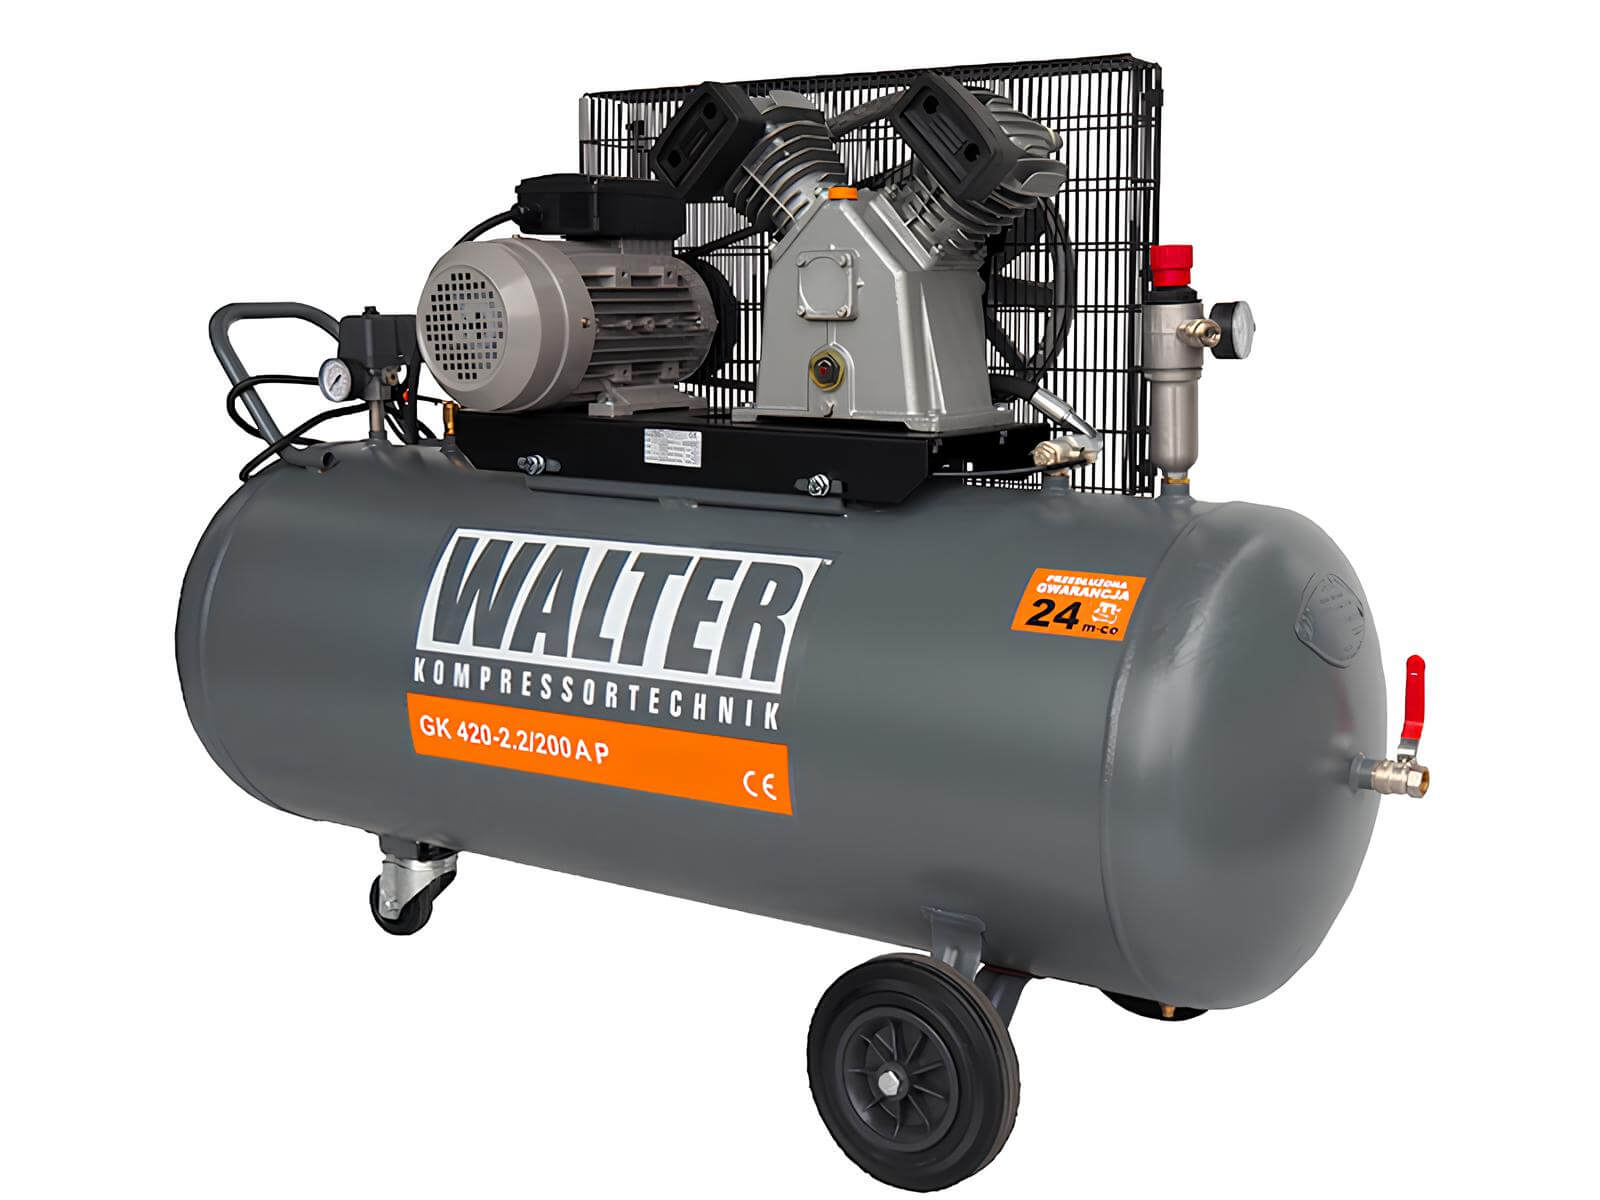 WALTER Litinový pístový kompresor GK420-22-200A příkon 2,2 kW, sací výkon 420 l/min, tlak 10 bar, vzdušník 200 l, napětí 230/50 V/Hz